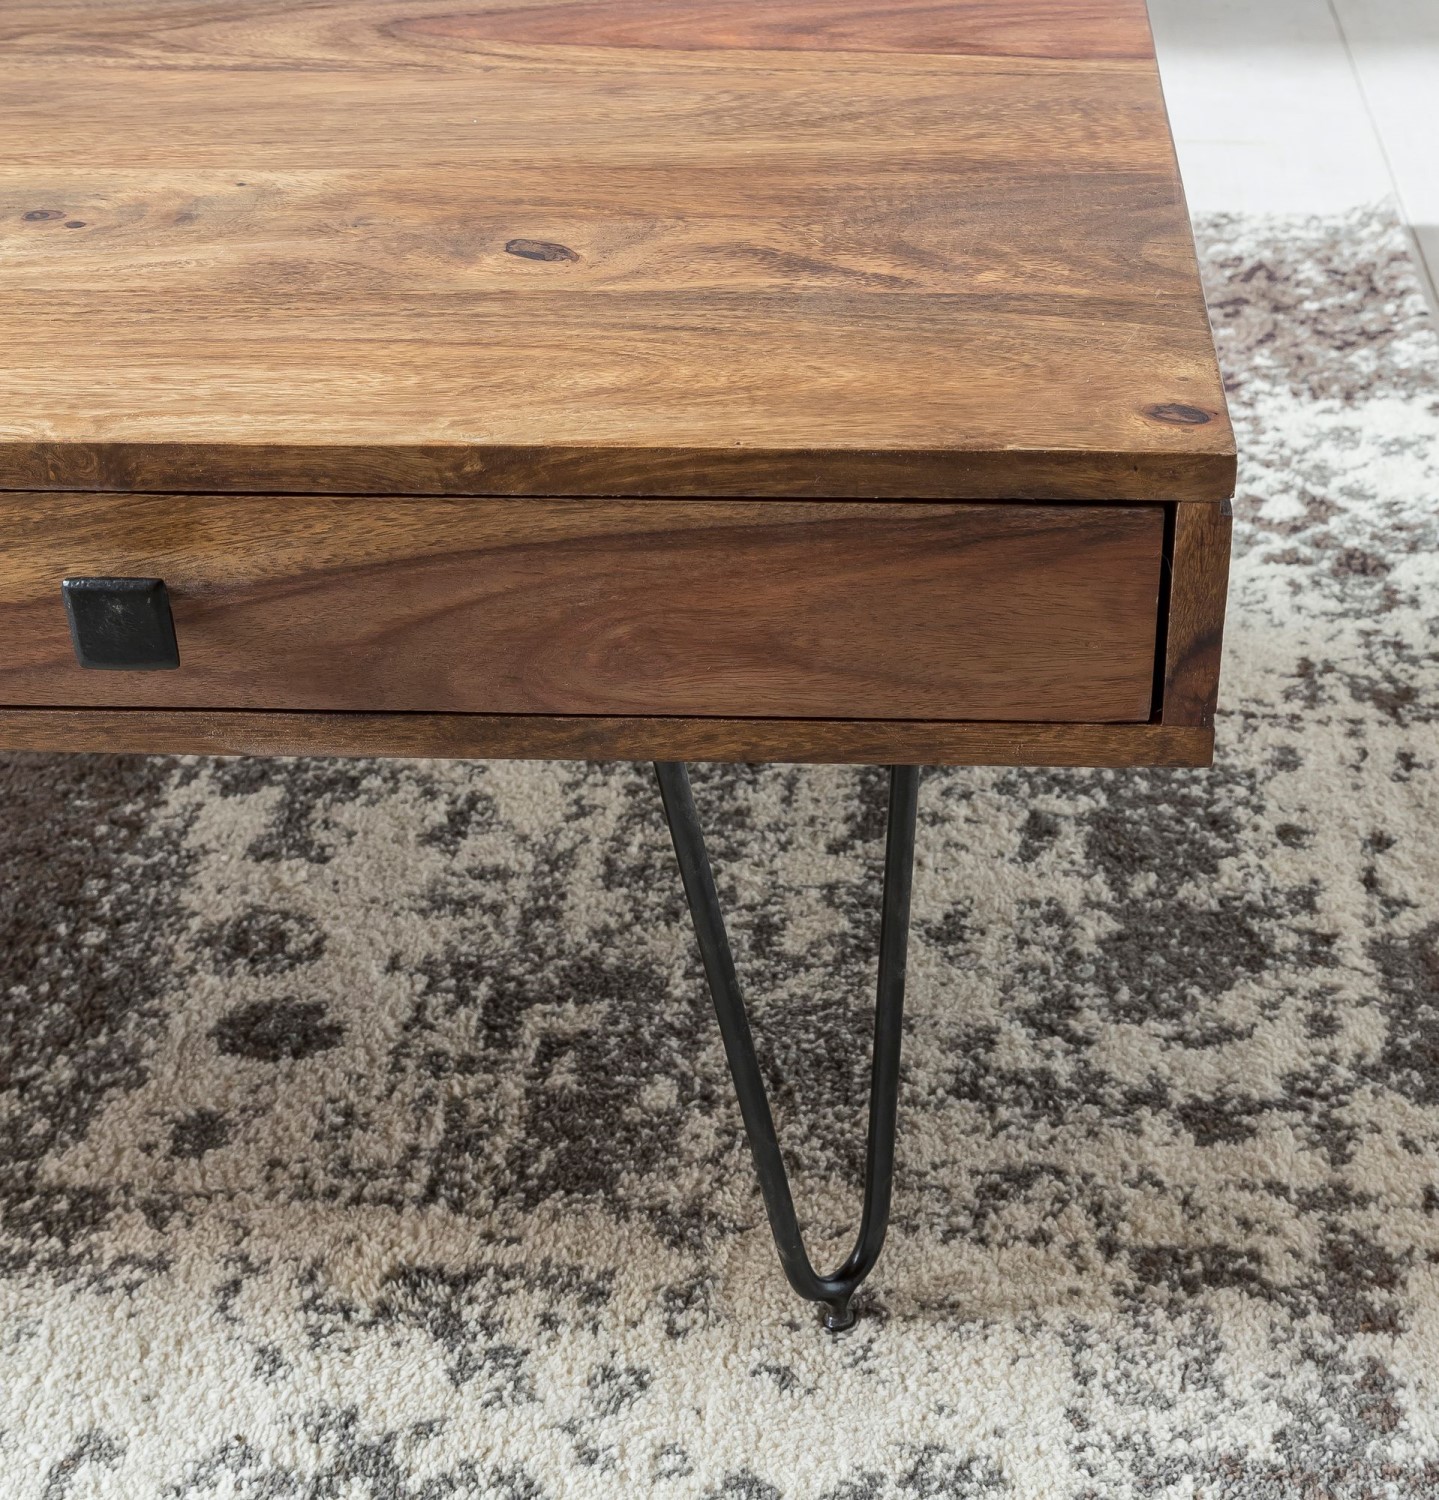 WOHNLING Couchtisch Massiv-Holz Sheesham 110cm breit Wohnzimmer-Tisch Design Metallbeine Landhaus-Stil Beistelltisch